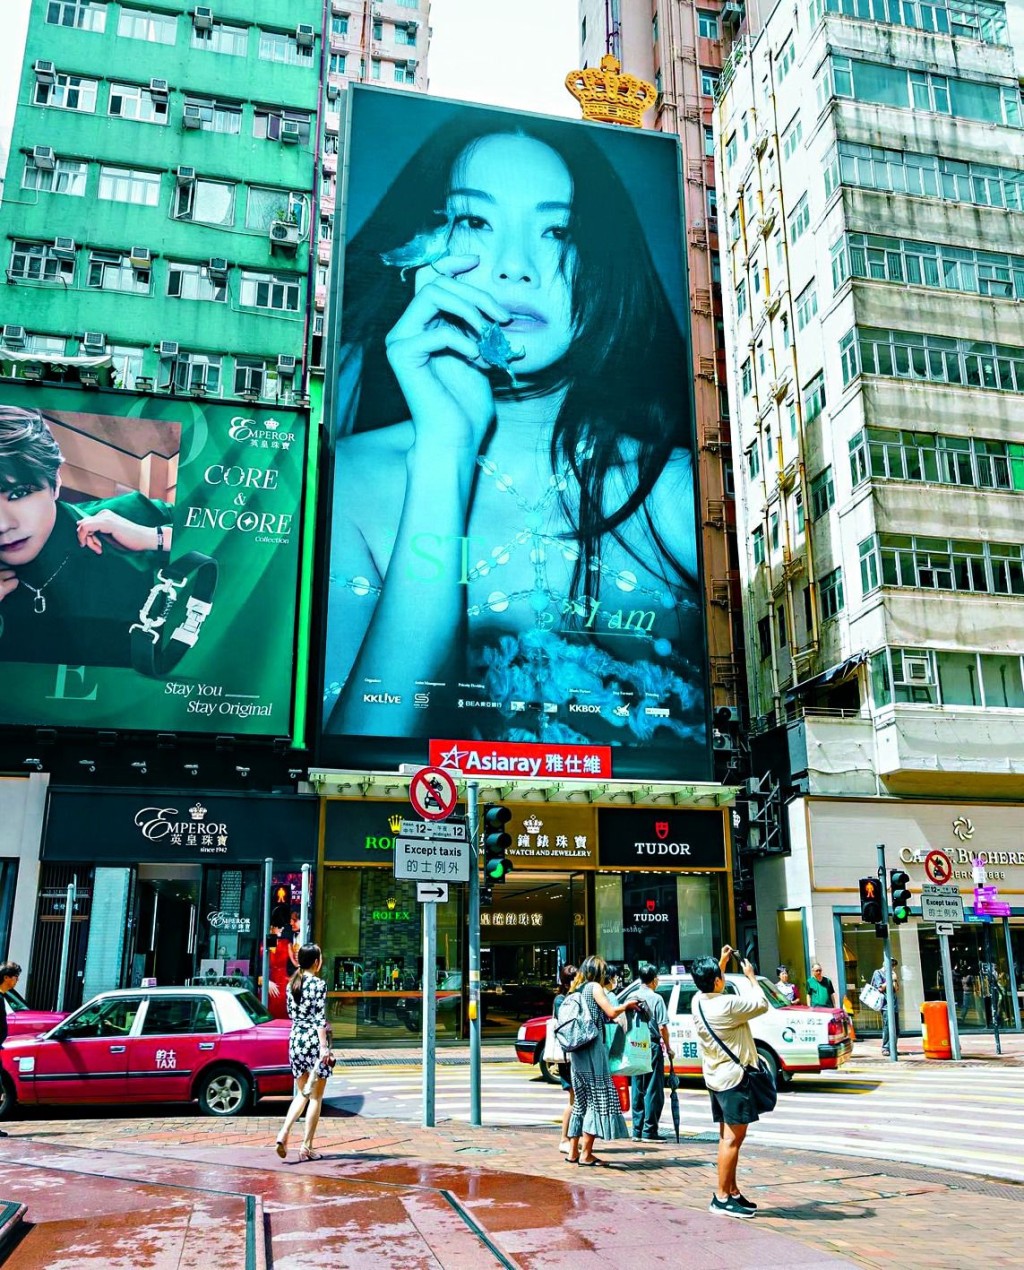 鄧麗欣在鬧市以巨型屏幕宣傳。